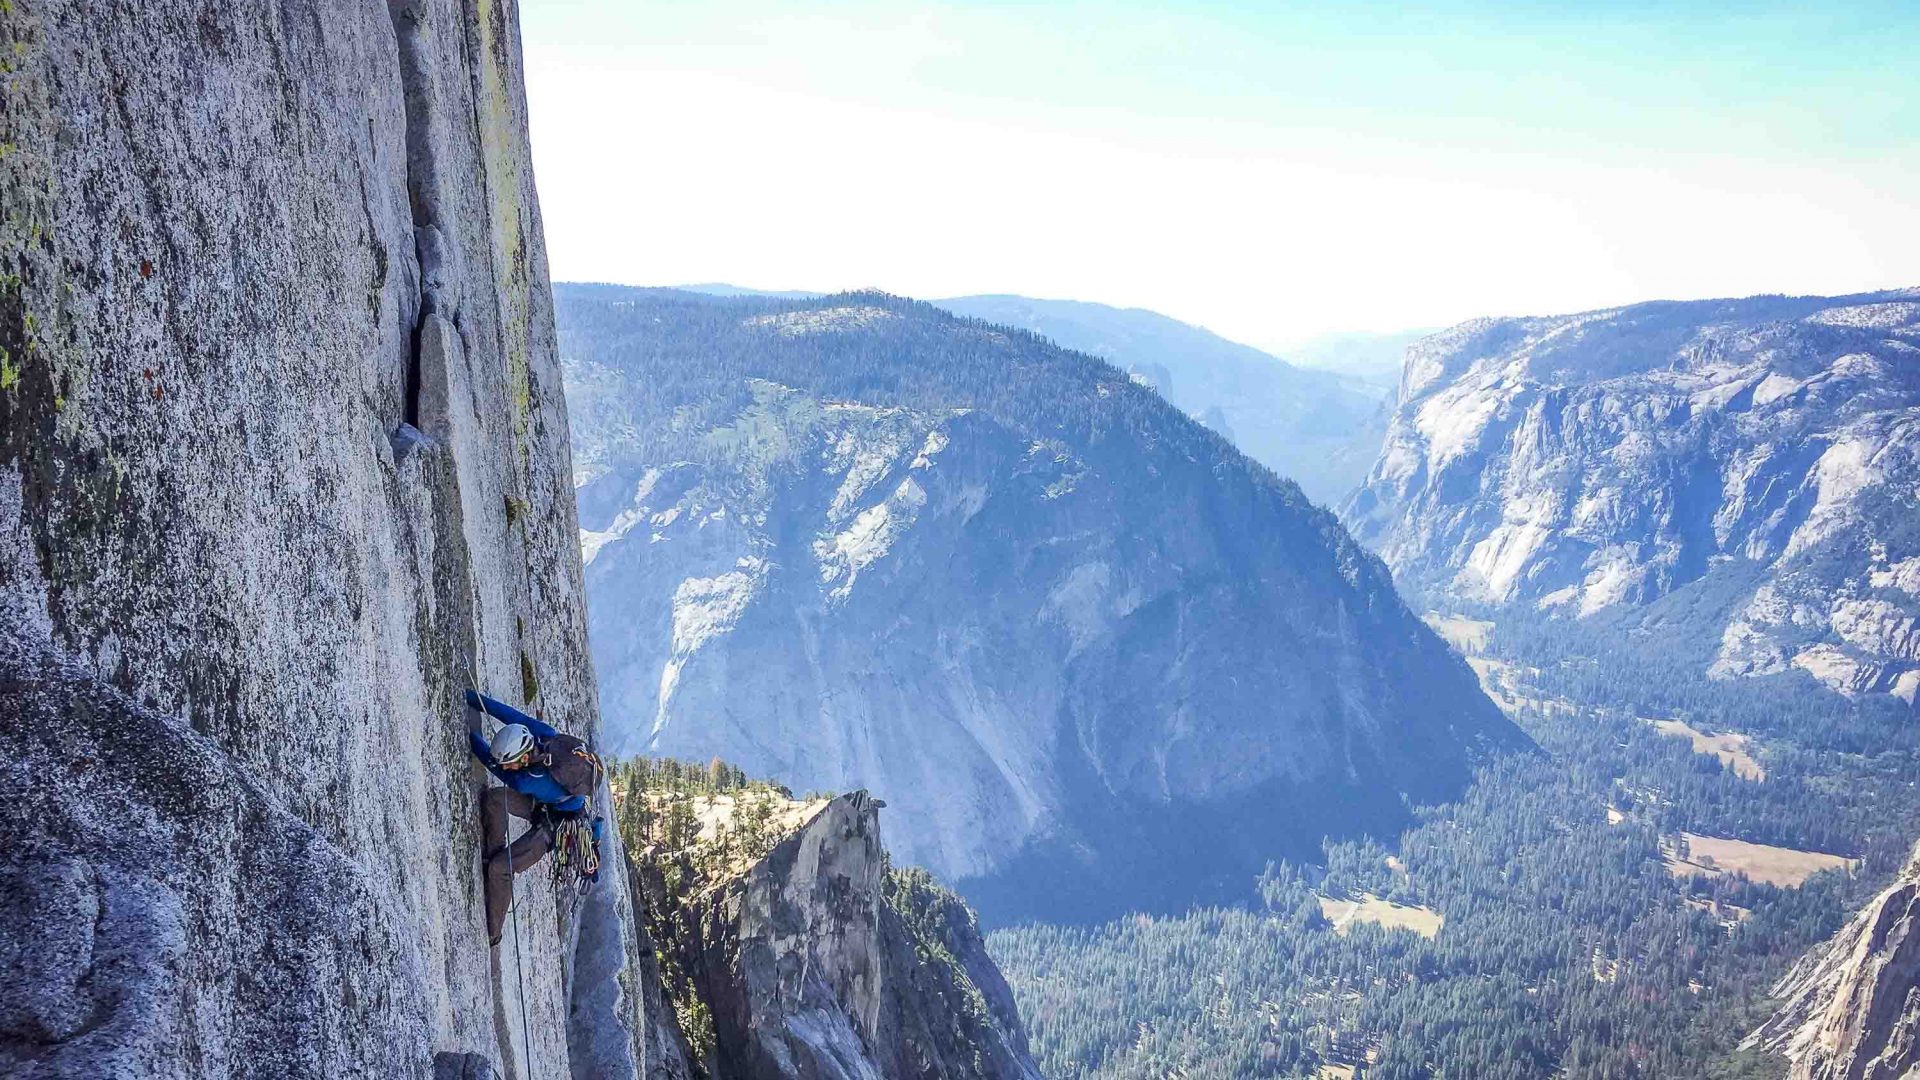 A climber climbing on the edge of a rock face.